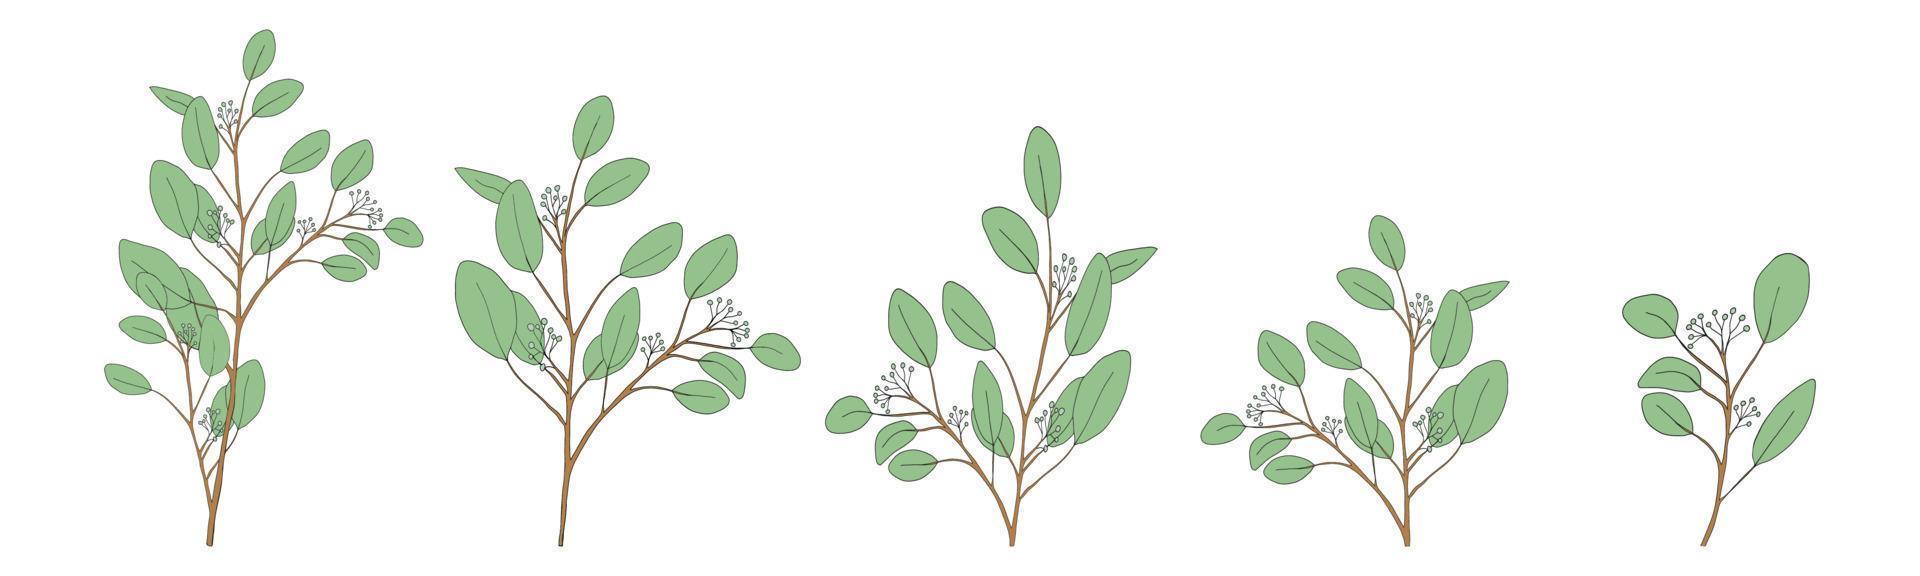 feuilles d'eucalyptus forme ronde sur branches.set illustration vectorielle éléments de feuilles vertes naturelles, eucalyptus populus isolé sur fond blanc conception simple et mignonne pour le textile ou la carte de voeux vecteur